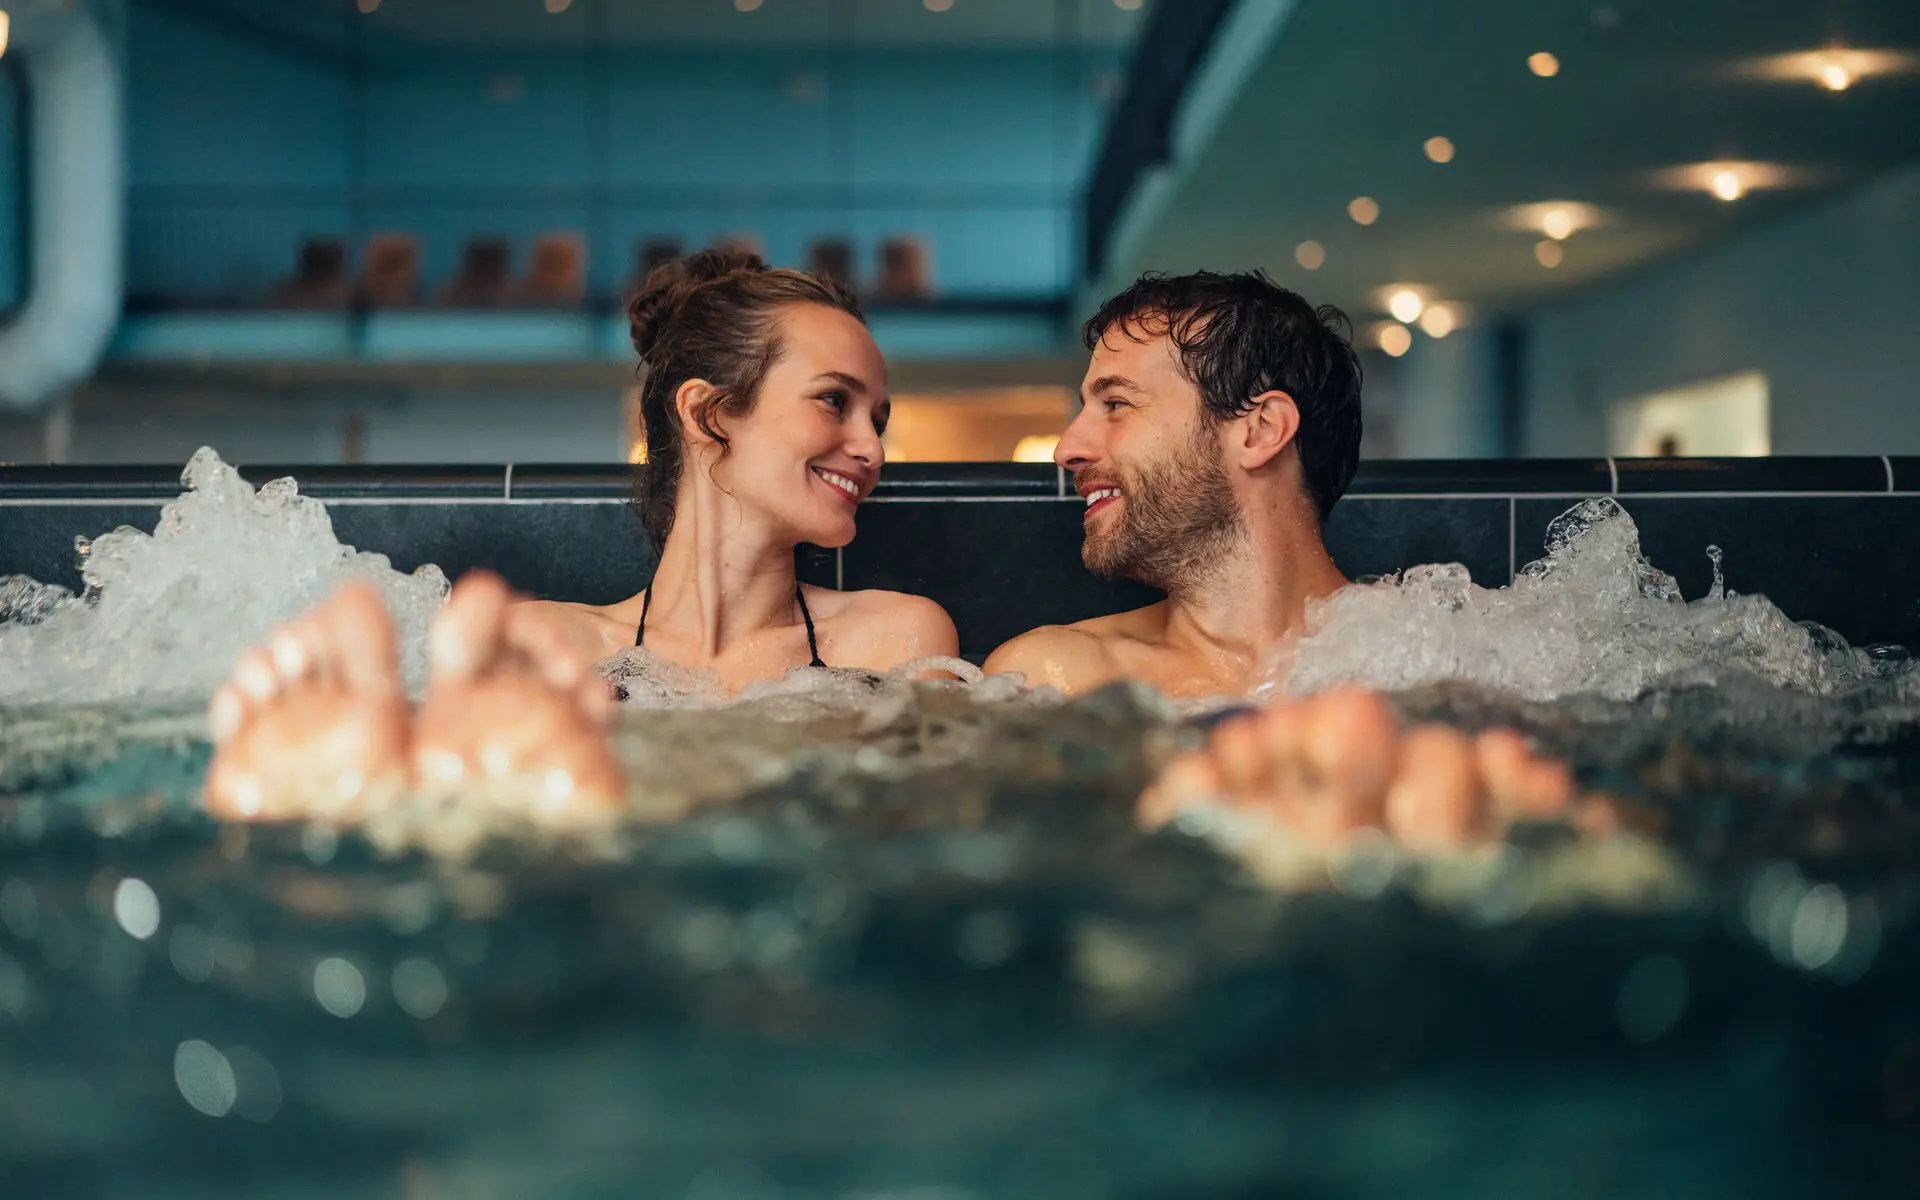 Ein Mann und eine Frau sitzen in einem sprudelnden Schwimmbecken, die Blicke einander zugewandt. Im Hintergrund ist abgedunkelt und leicht verschwommen einige Liegen im oberen Bereich zu erkennen.